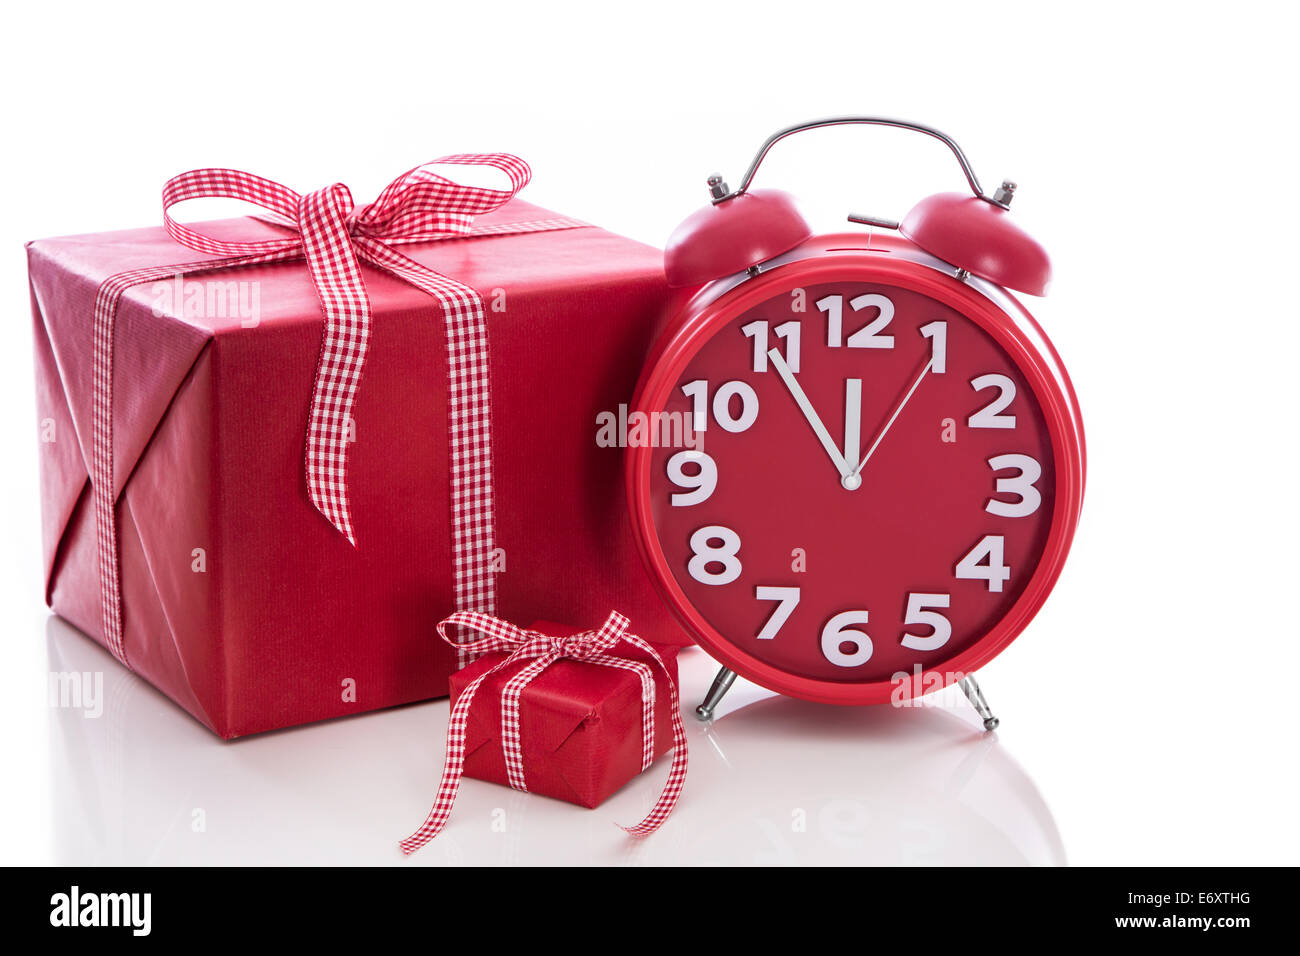 Natale: Big Red in confezione regalo con sveglia rossa - Last minute shopping di Natale Foto Stock